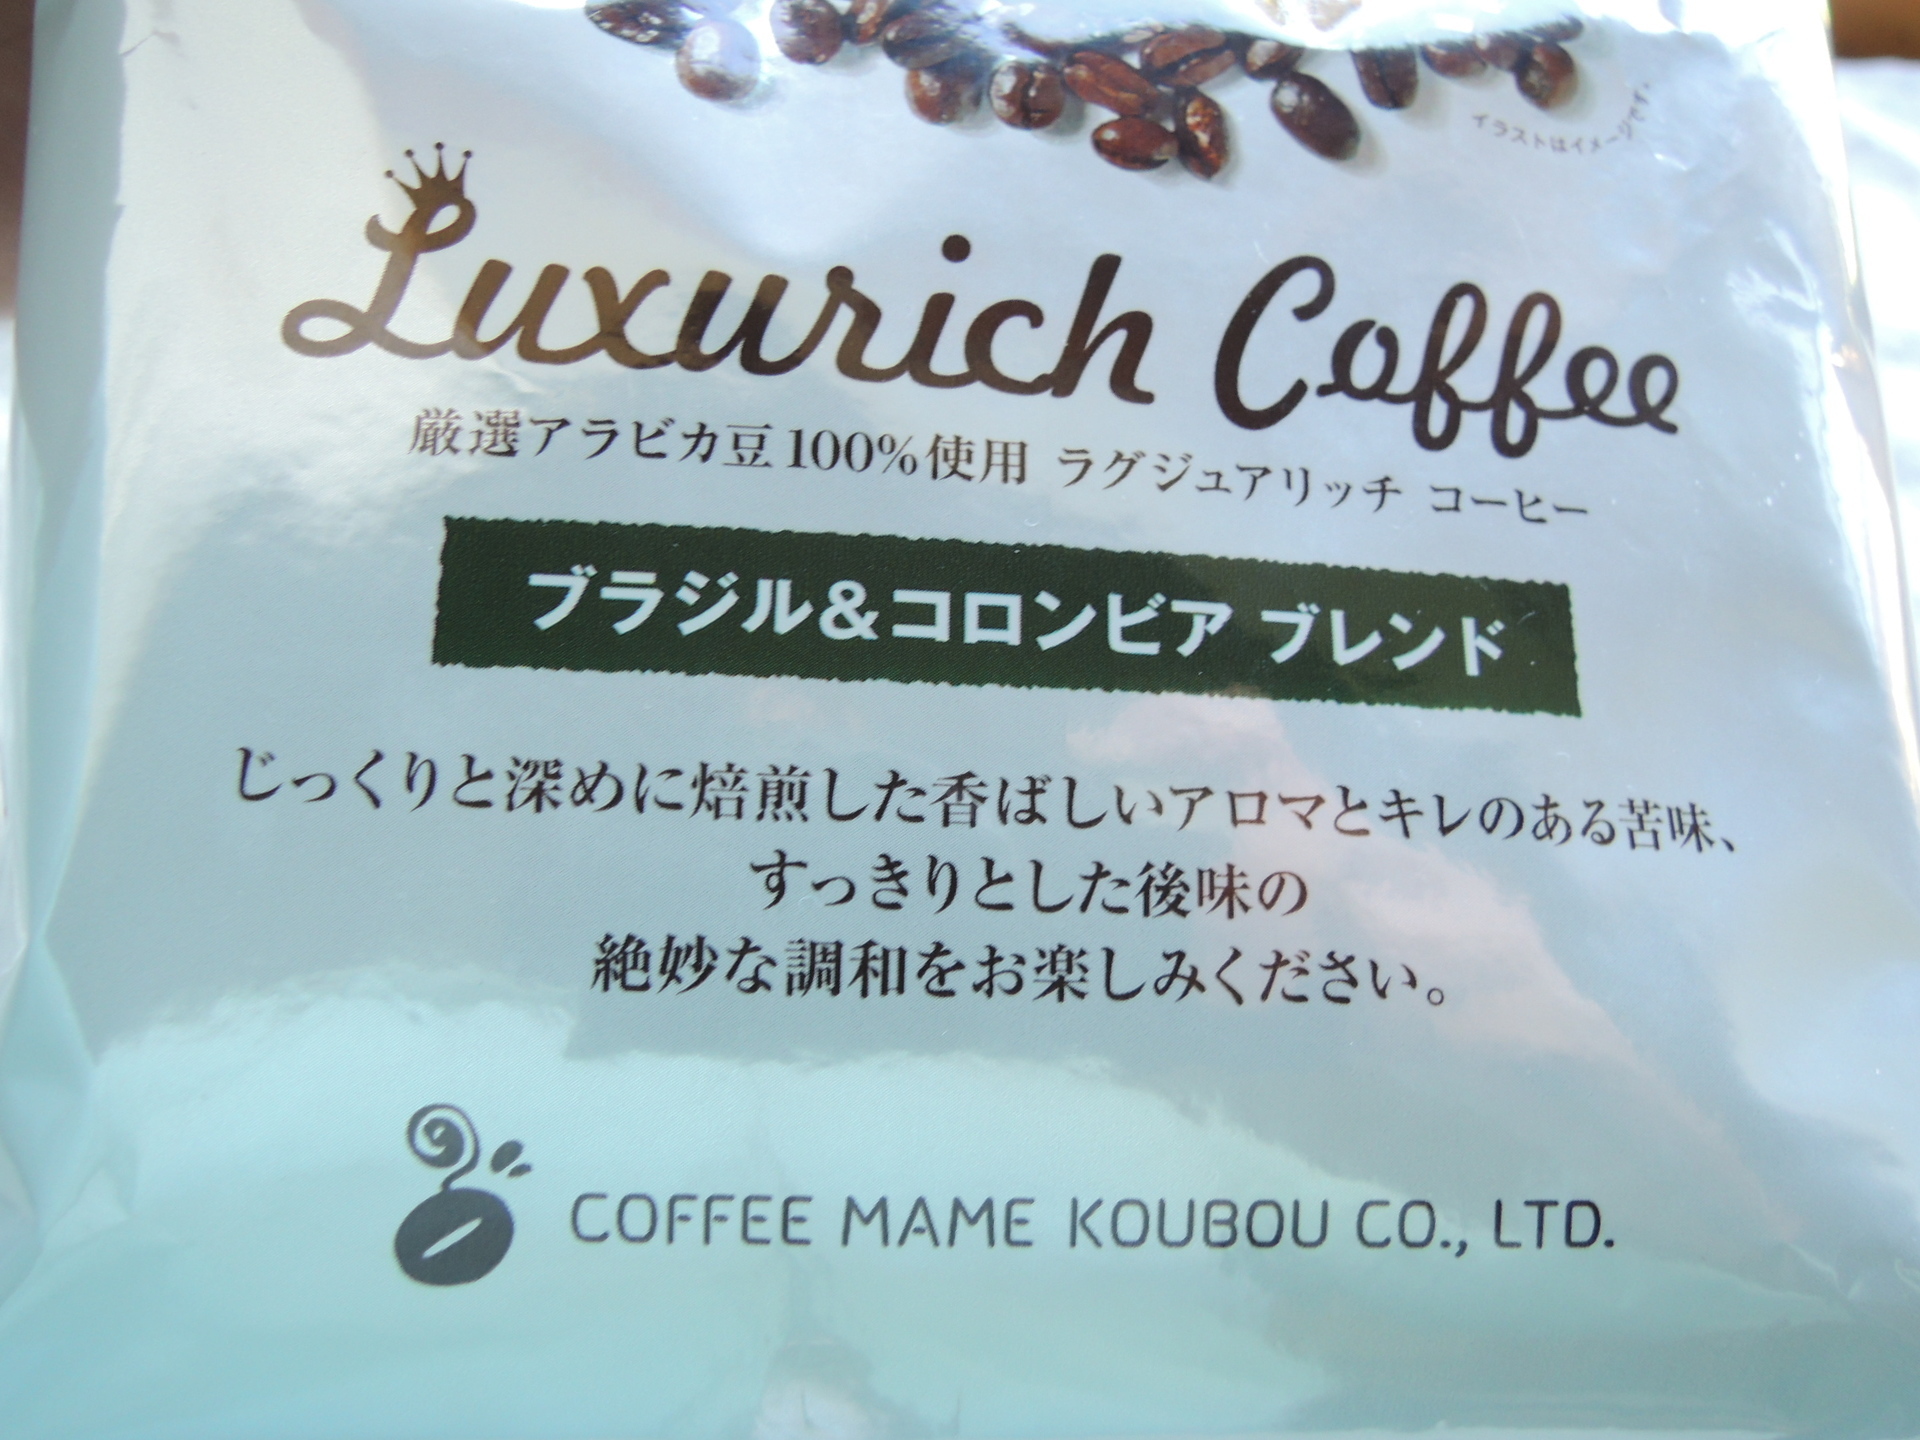 ラグジュアリッチコーヒー 業務スーパーのおすすめコーヒーとは ナチュラルスタイルな暮らし インテリア 収納